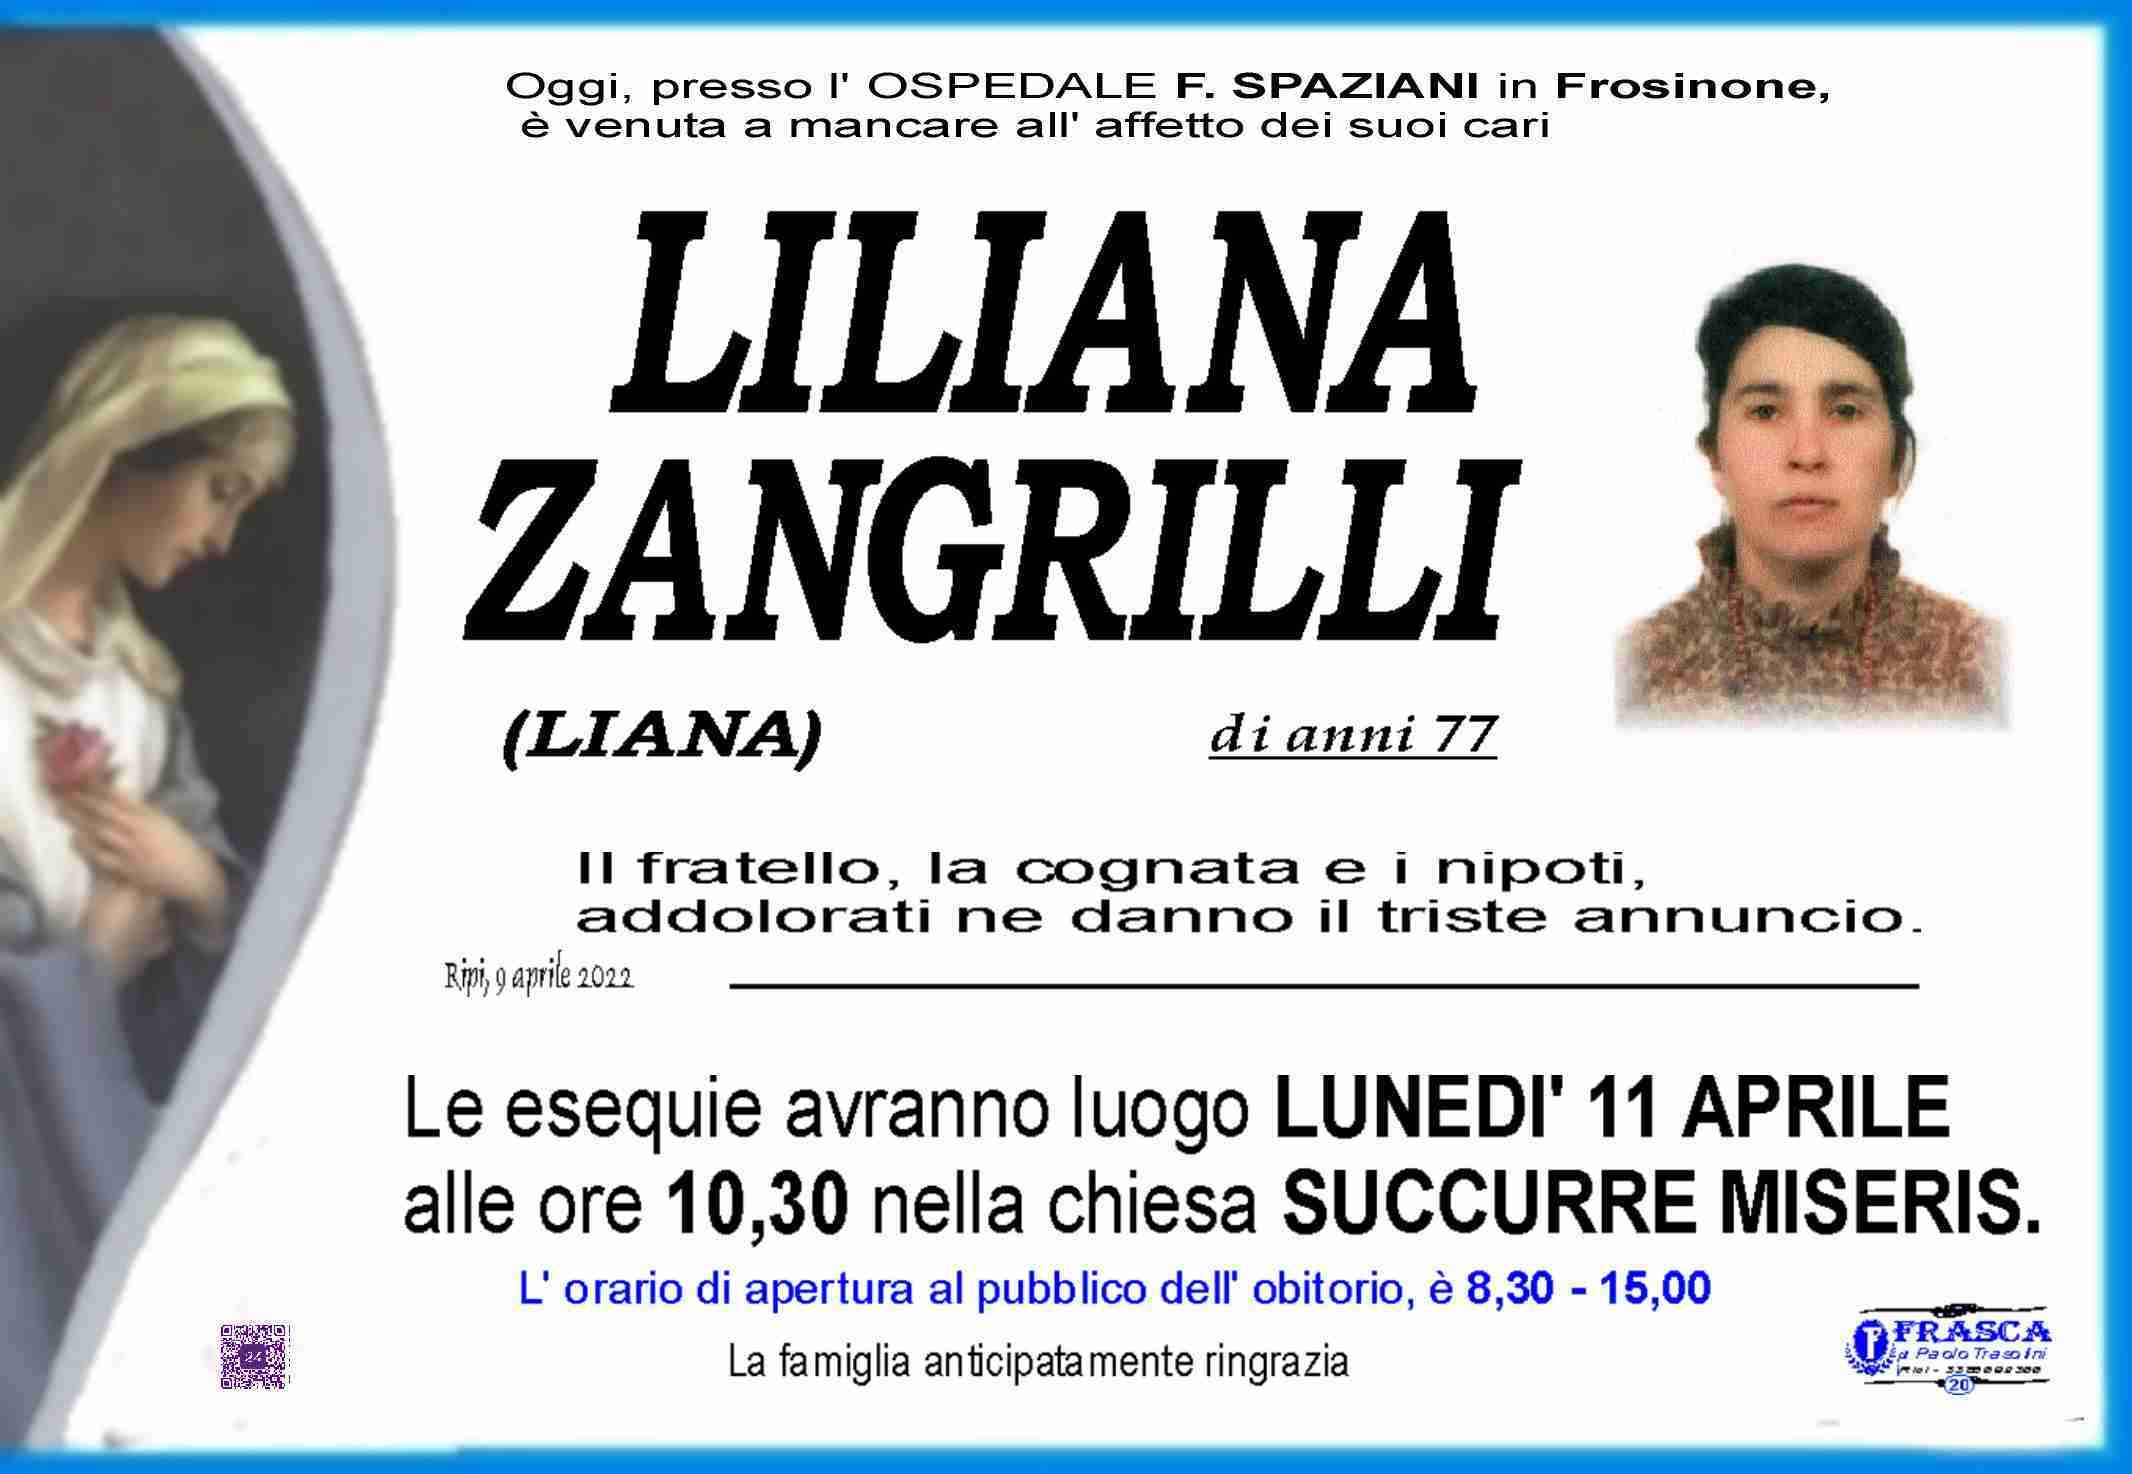 Liliana Zangrilli